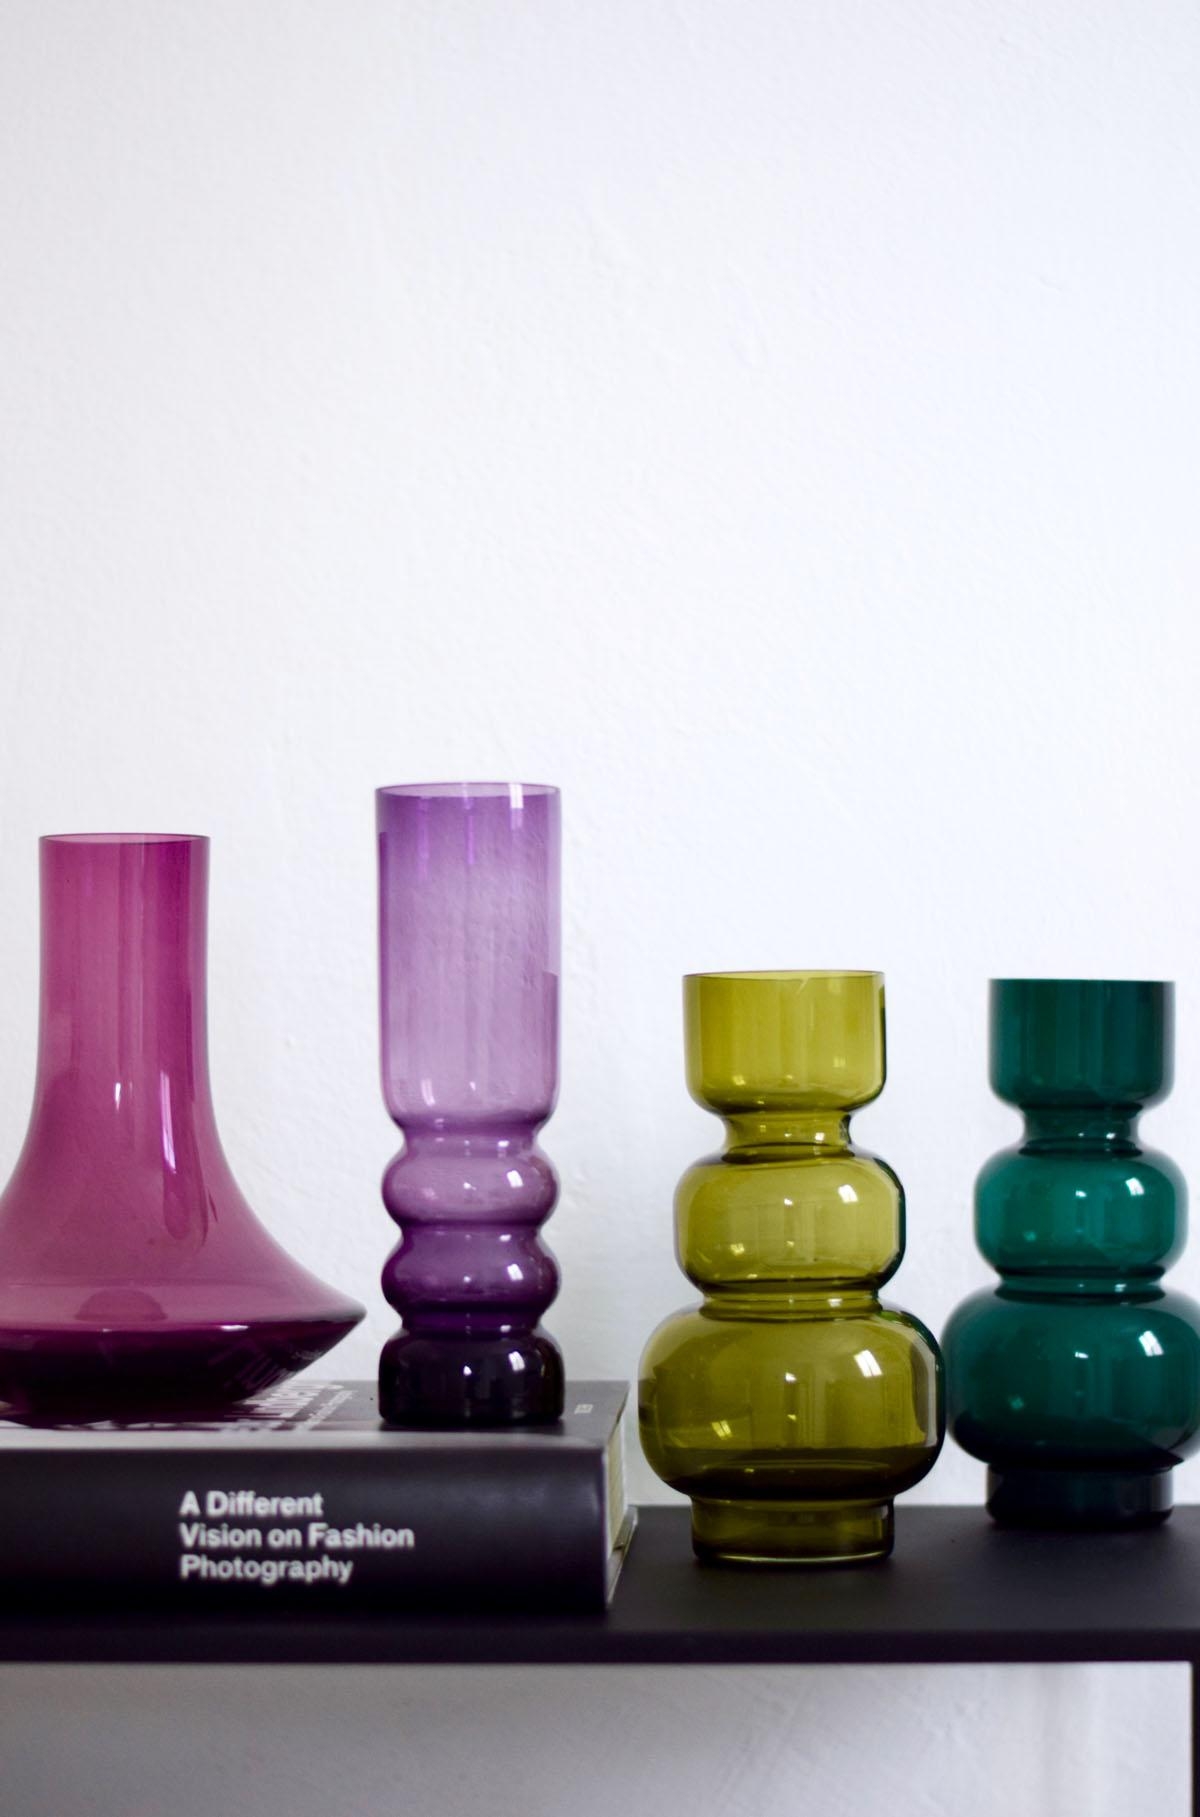 Eine kleine Farbeskalation gegen den Januar-Blues...
#vasen #rauchglas #midcentury #lieblingsstücke #vasensammlung